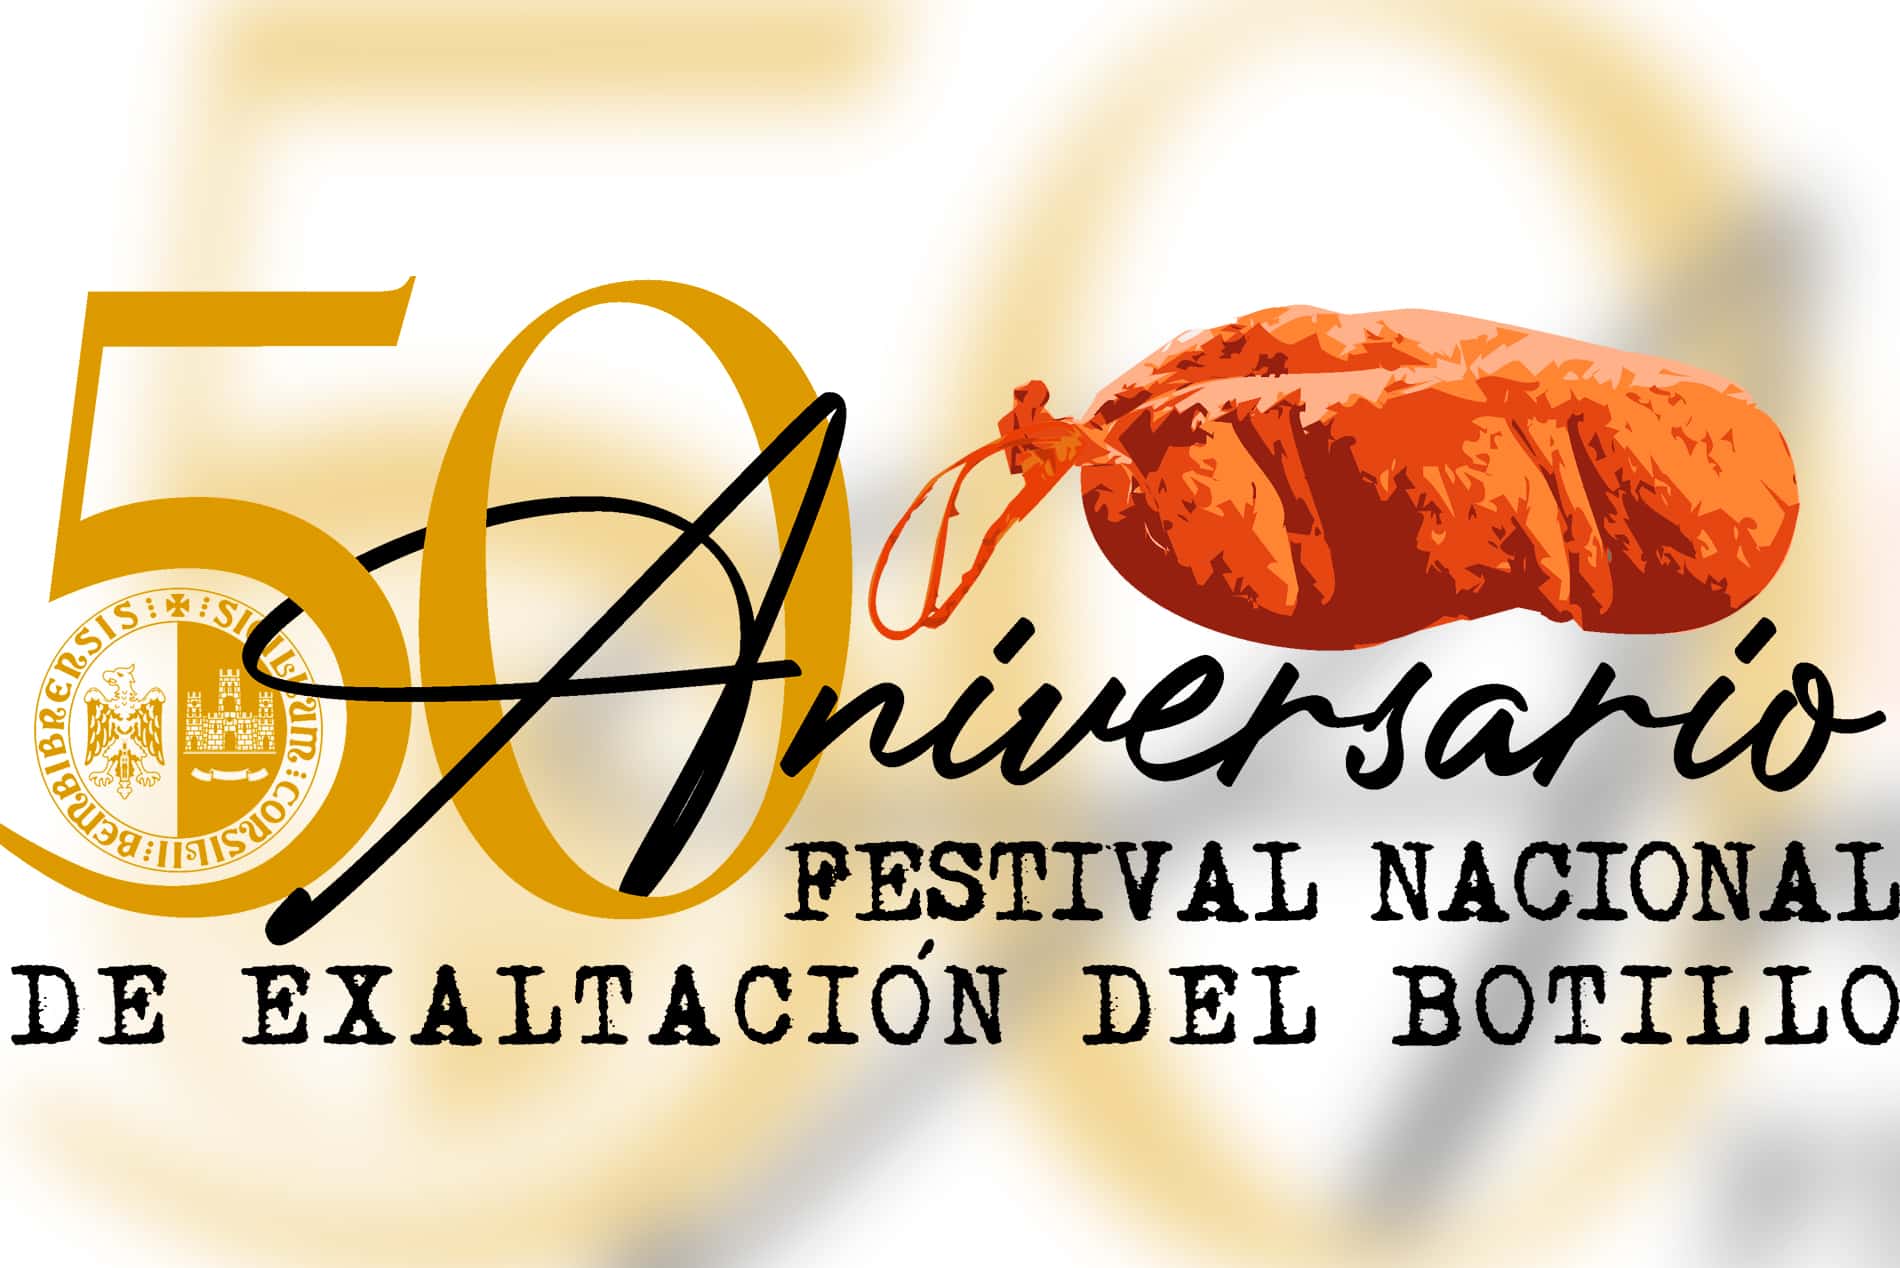 Logotipo Conmemorativo del 50 aniversario del Festival Nacional de Exaltación del Botillo de Bembibre